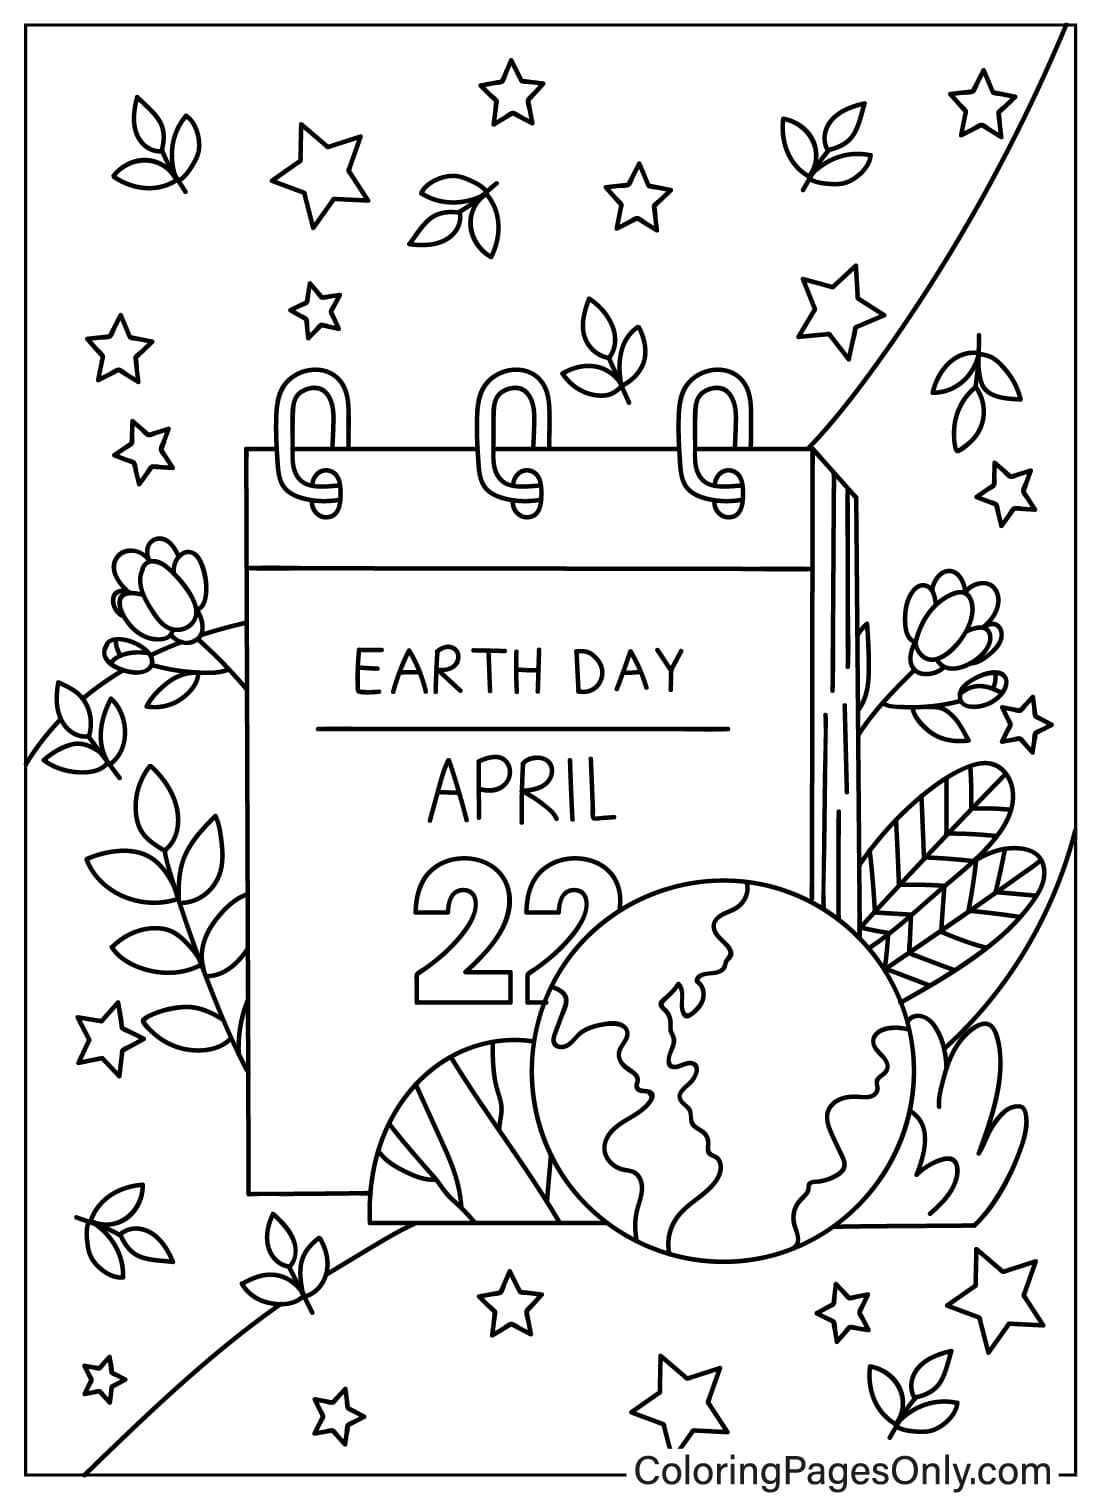 Immagini Pagina da colorare per la Giornata della Terra dalla Giornata della Terra